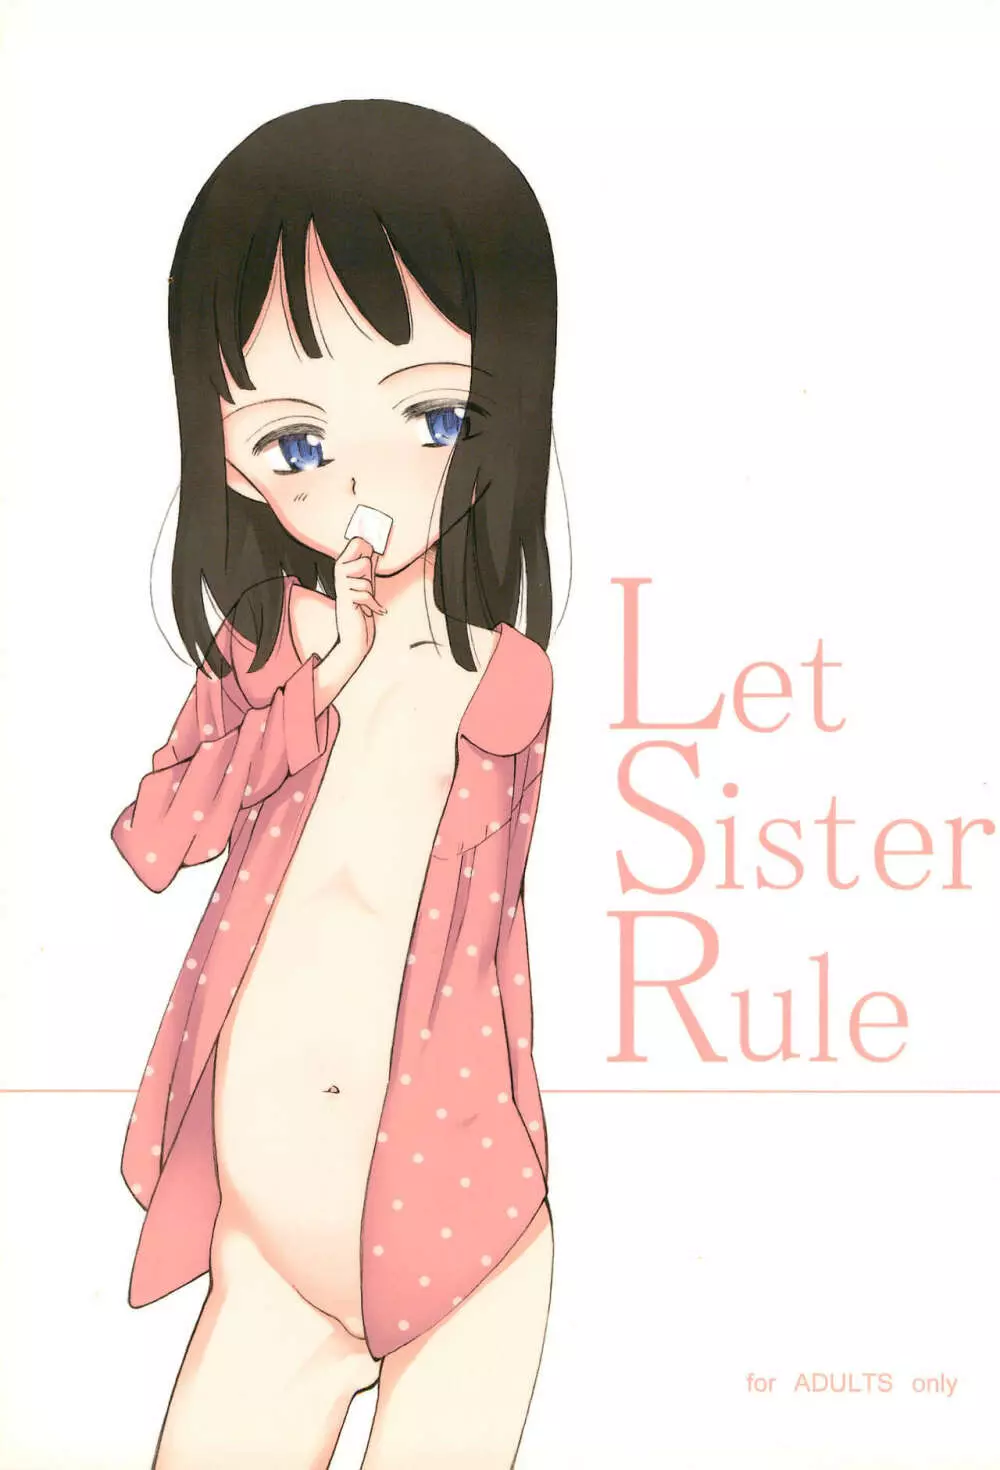 Let Sister Rule